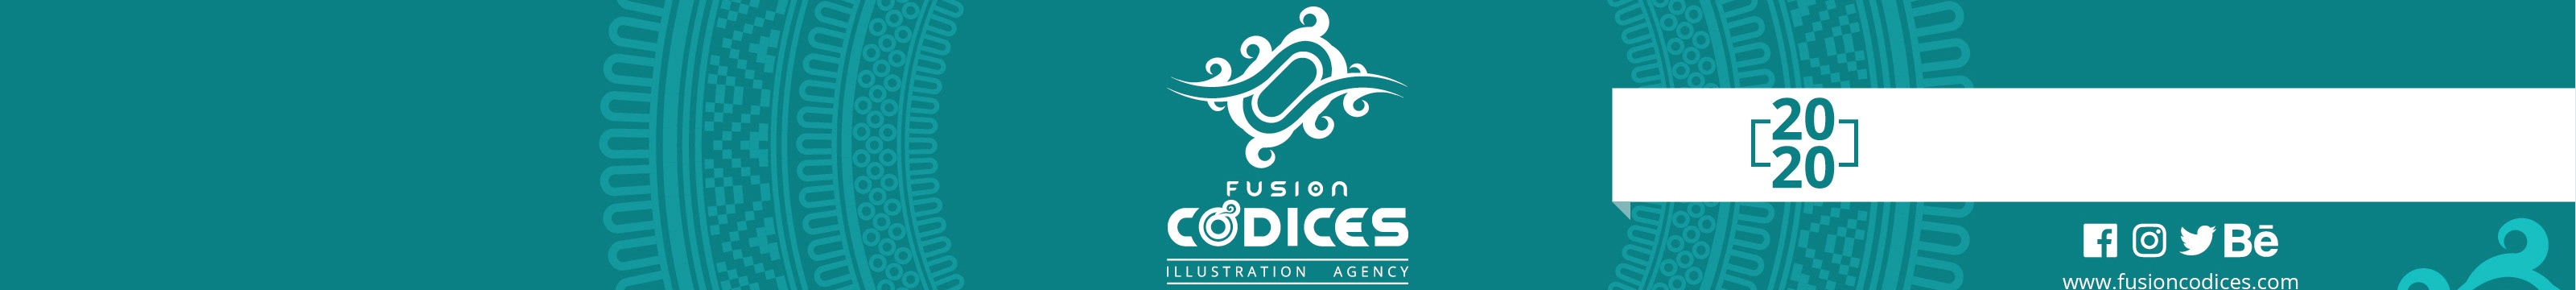 Fusion Codices's profile banner